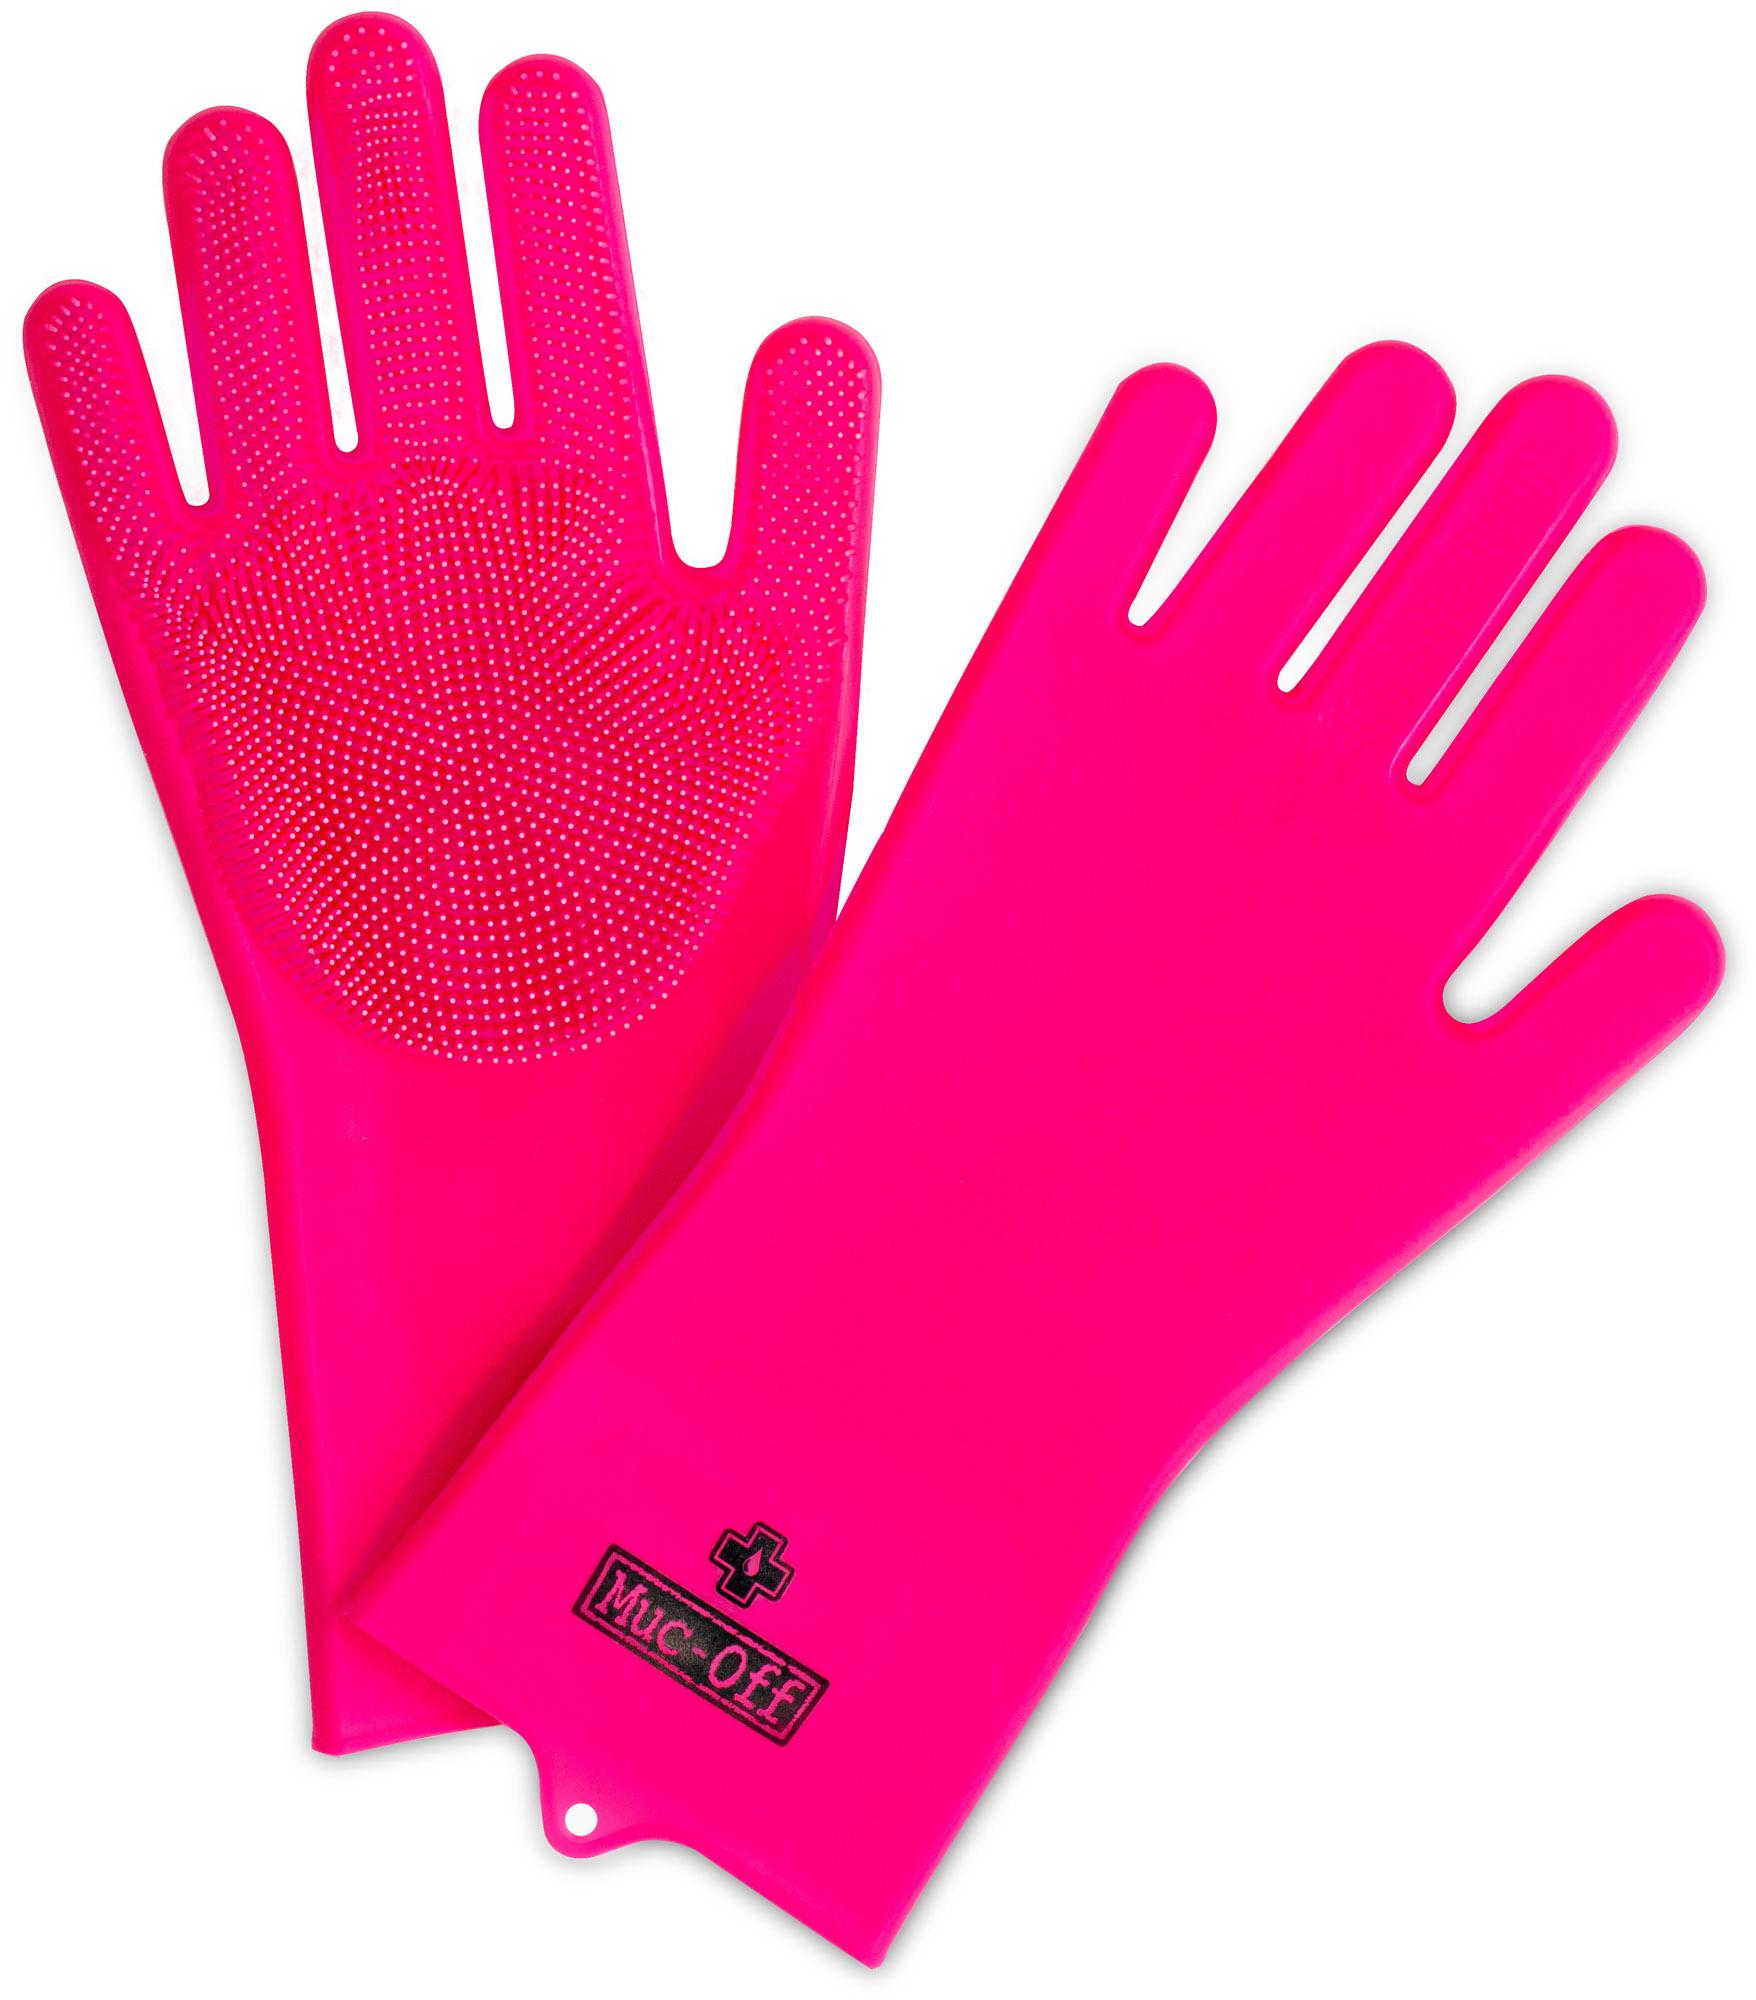 Muc-off Deep Scrubber Gloves - Pink